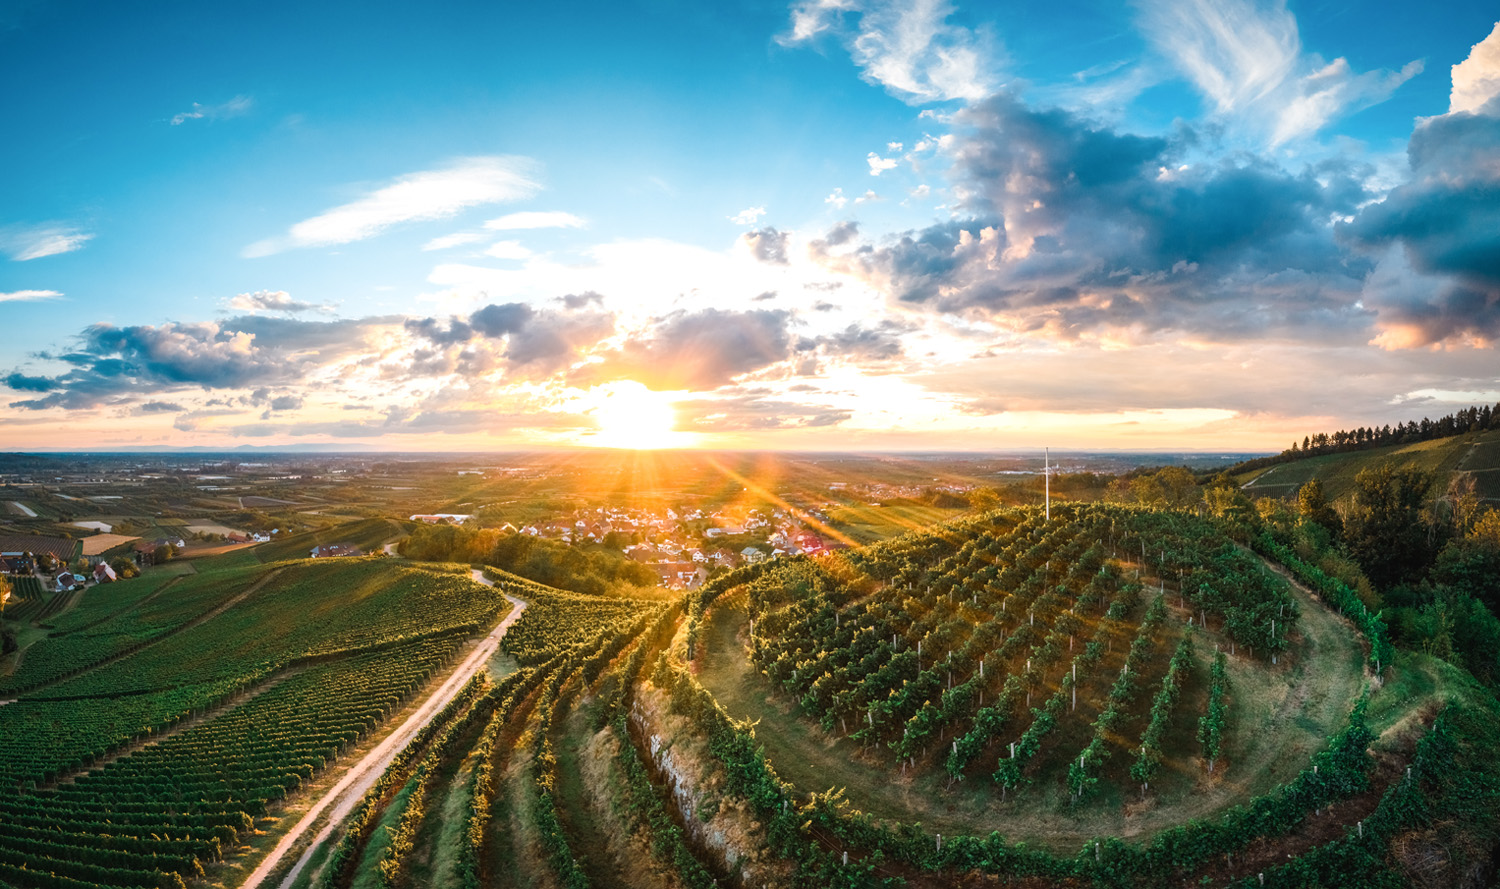 Einfach magisch wie die Sonne die Ullenburg bei Oberkirch in der Ortenau erstrahlen lässt. Die Rebhänge entlang der Weinschleife glänzen im Sonnenlicht.| © Oberkircher Winzer eG, Benedikt Spether